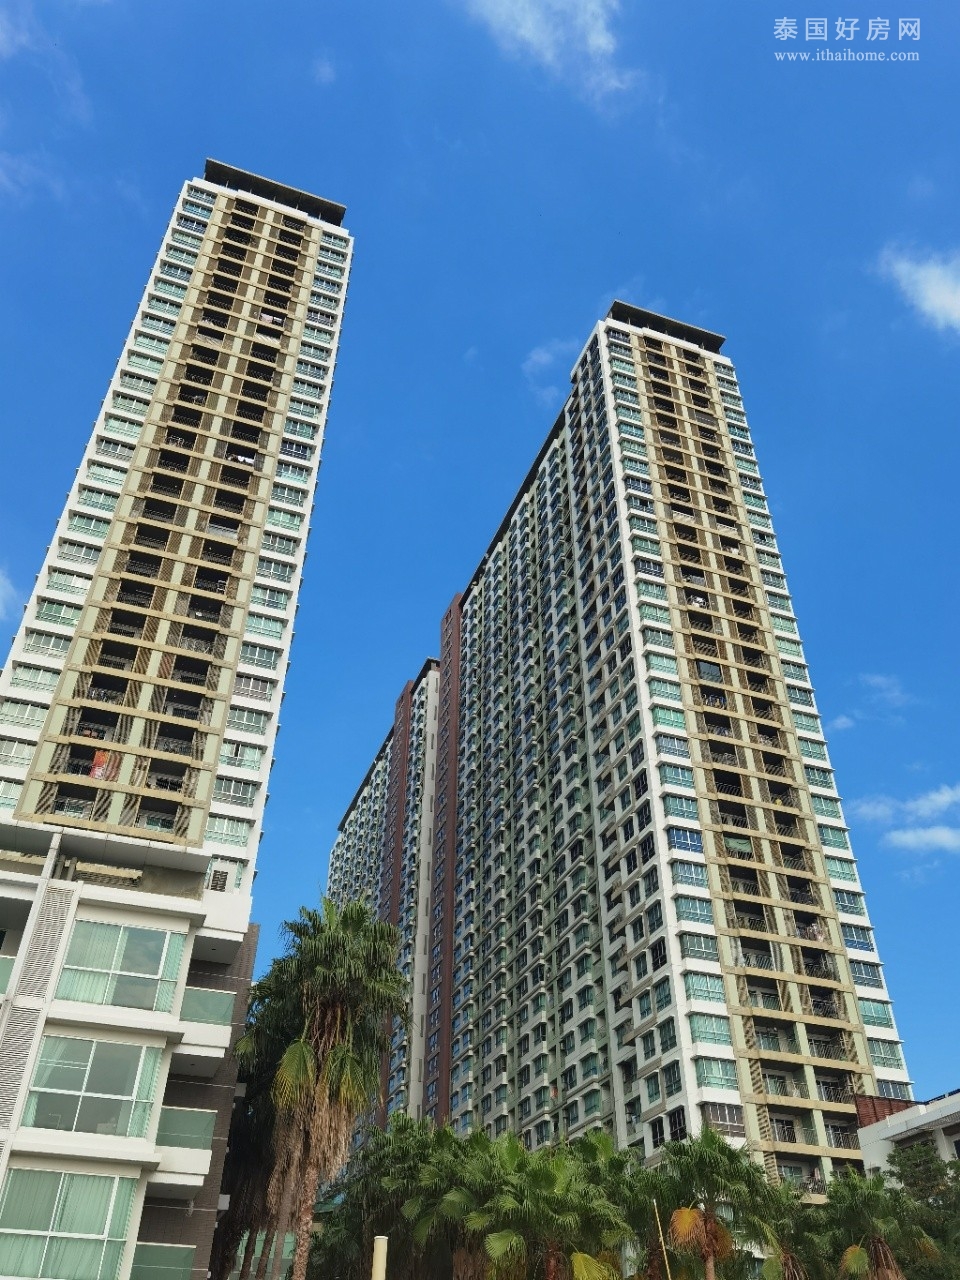 【推荐】Lumpini Park Riverside Rama 3公寓出租 1卧26平米 7,500铢/月 3020房